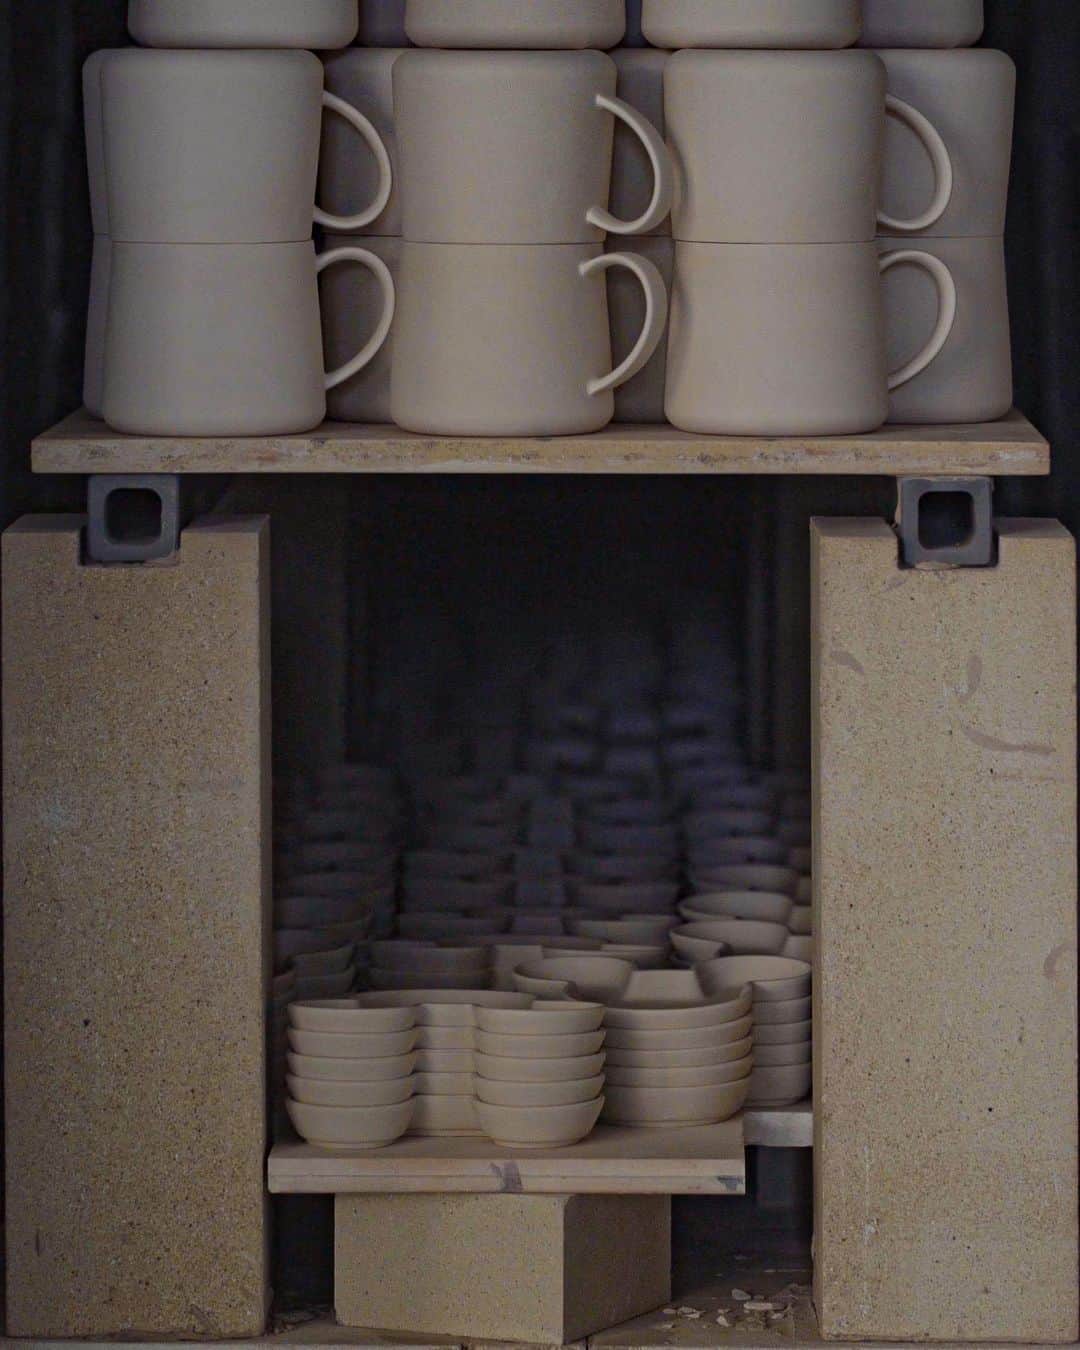 cafe_no_maのインスタグラム：「English follows Japanese   製陶の現場探訪｜VOL.1 理想のコーヒーカップをつくる旅  2017年の10月から12月にかけ延べ7日に渡り、岐阜県多治見市の滝呂町へと取材にでかけました。はじめてつくるコーヒーカップの製造の様子を写真や映像に記録するためです。これから何回かに分けて、当時の取材の様子をお届けします。  私たちには、理想とするコーヒーカップがあります。軽くて飲み口が薄く、普段遣いできる丈夫な磁器であること、ひとつひとつが手仕事のような味わいを残しながら、量産できるプロダクトであるということ。ネットで調べた岐阜の製陶所に伺い、このようなカップをつくりたいと伝えたところ、こころよく引き受けてくださることになりました。  続きは、カフェノマのプロフィールリンク（ @cafe_no_ma ）から、ウェブマガジン「エブリデイ コーヒー リトリート」をご覧ください。  Exploring the World of Pottery | VOL.1 Journey to Craft the Perfect Coffee Cup  From October to December in 2017, I embarked on a 7-day journey to the quaint Takirocho in Tajimi City, Gifu Prefecture. My goal was to capture the art of making our debut coffee cup through both photographs and videos. Over the next few installments, I'll share with you the essence of that experience.  For us, there's a vision of the perfect coffee cup. One that is light, with a delicate sip edge, durable for everyday use, made of sturdy porcelain. Each piece retains a handcrafted touch, yet is designed for mass production. When we reached out to a pottery studio in Gifu that we found online with this vision in mind, they warmly embraced our idea.  For more of this story, please visit our web magazine "Everyday Coffee Retreat" through the profile link at ( @cafe_no_ma ).」